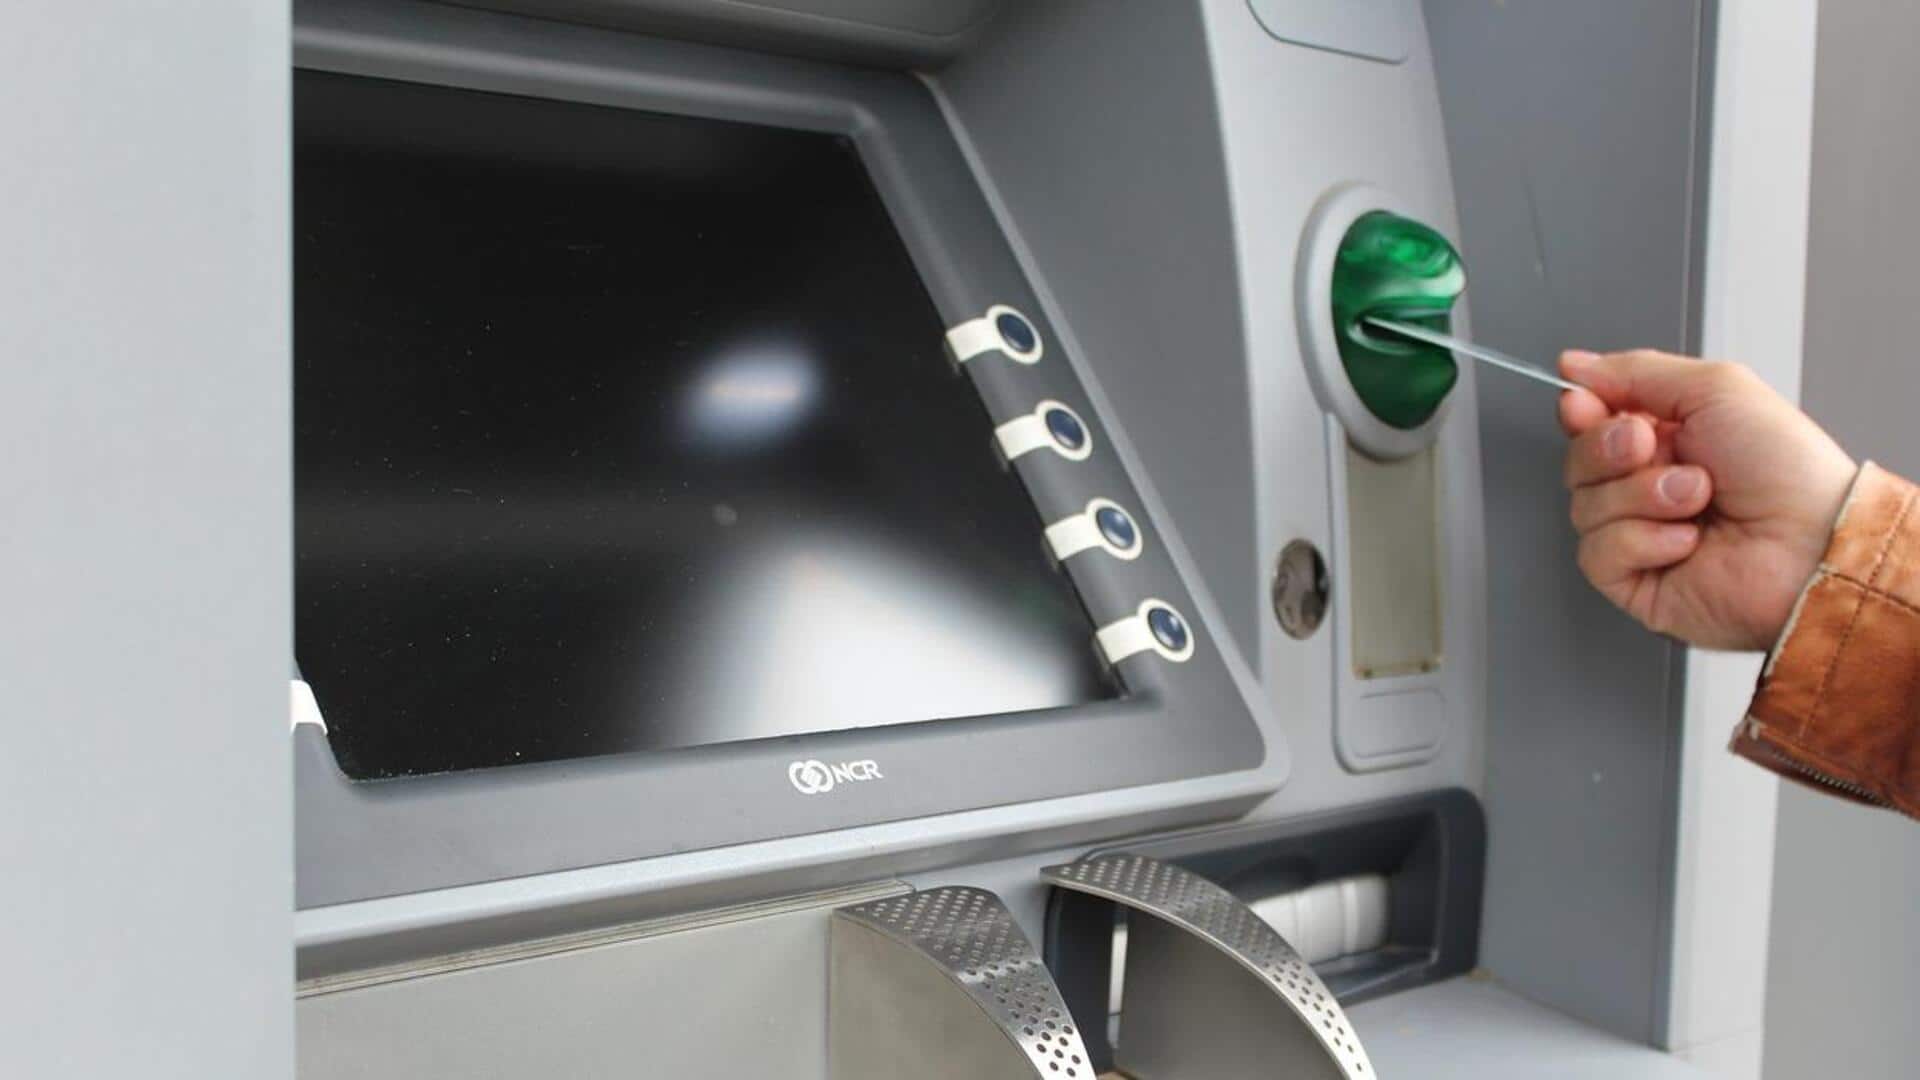 बिहार: सामने आई नई तरह की धोखाधड़ी, ATM को खराब कर लोगों को लूट रहे अपराधी